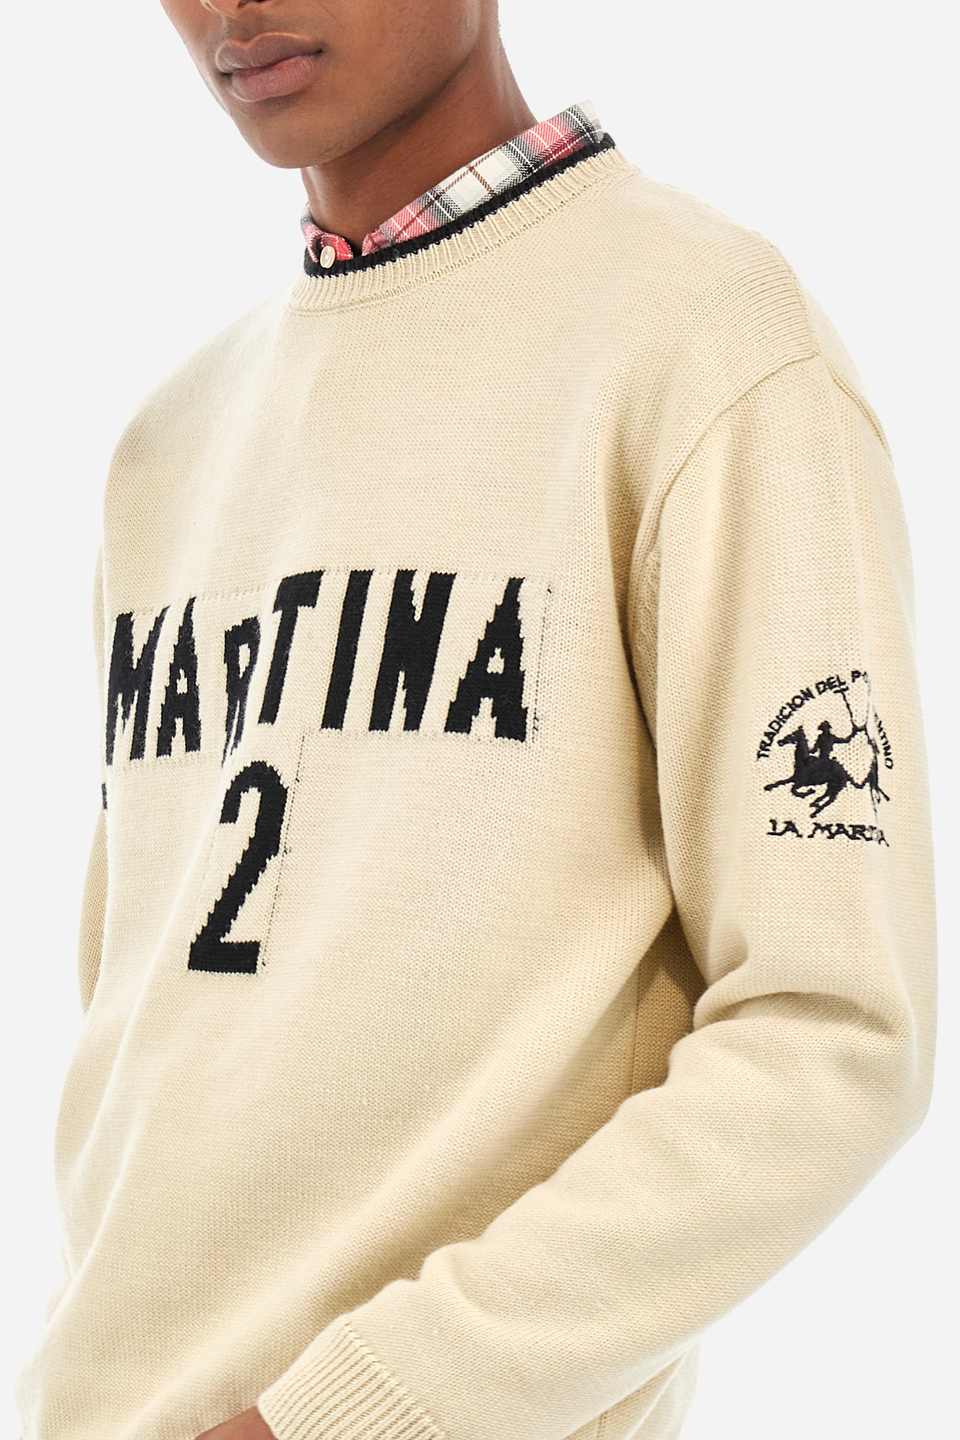 Maglione uomo girocollo comfort fit - Walenkino | La Martina - Official Online Shop